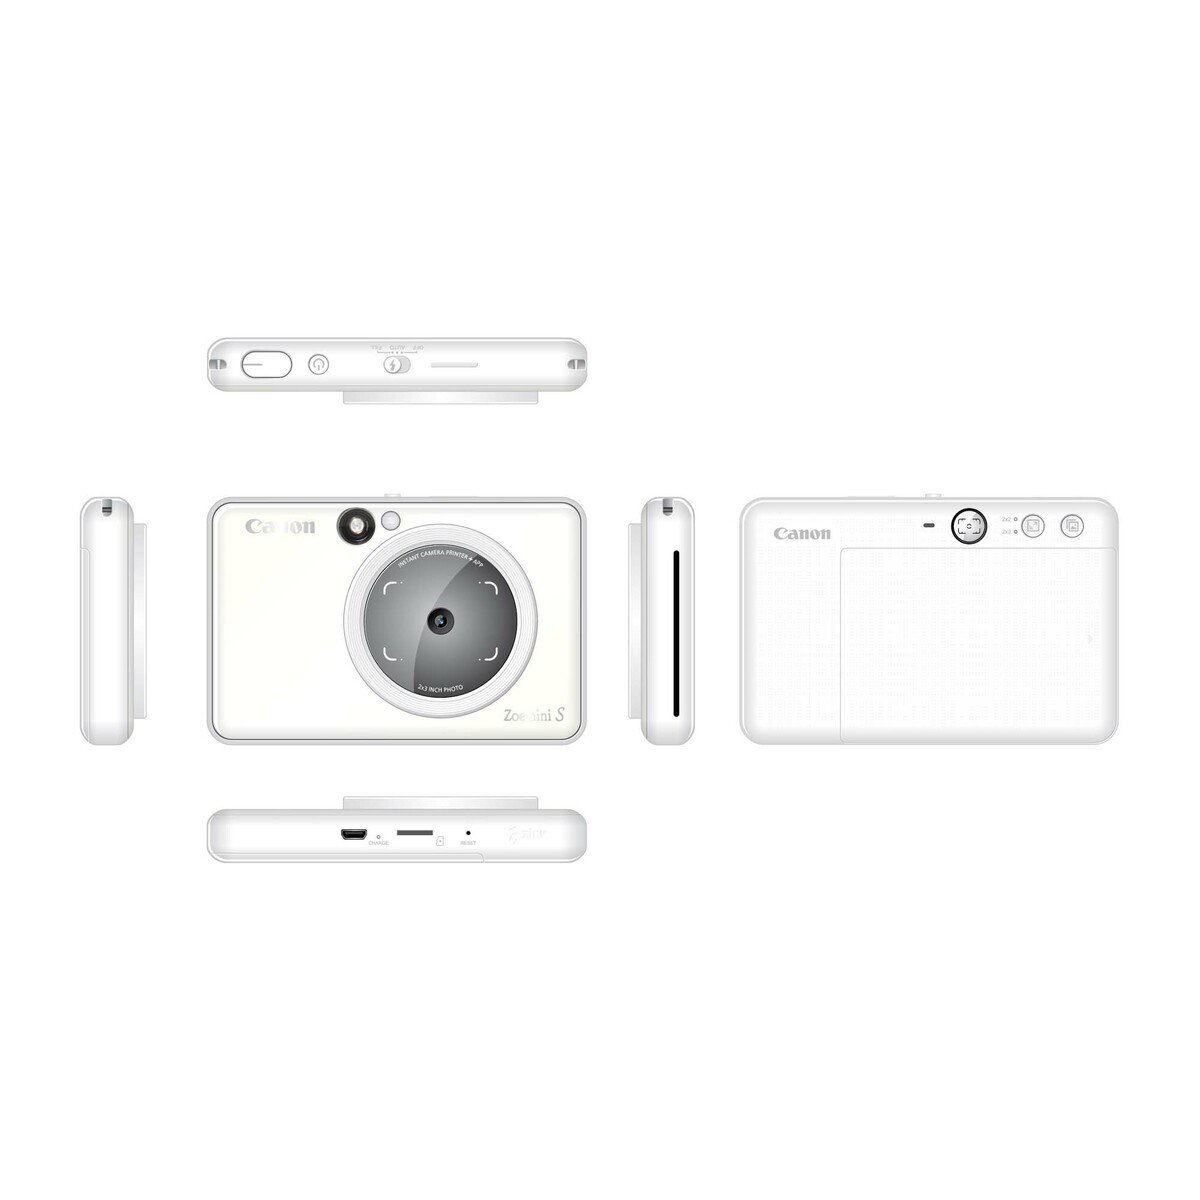 Canon Instant Camera Colour Photo Printer ZOEMINI-S 8MP Pearl White